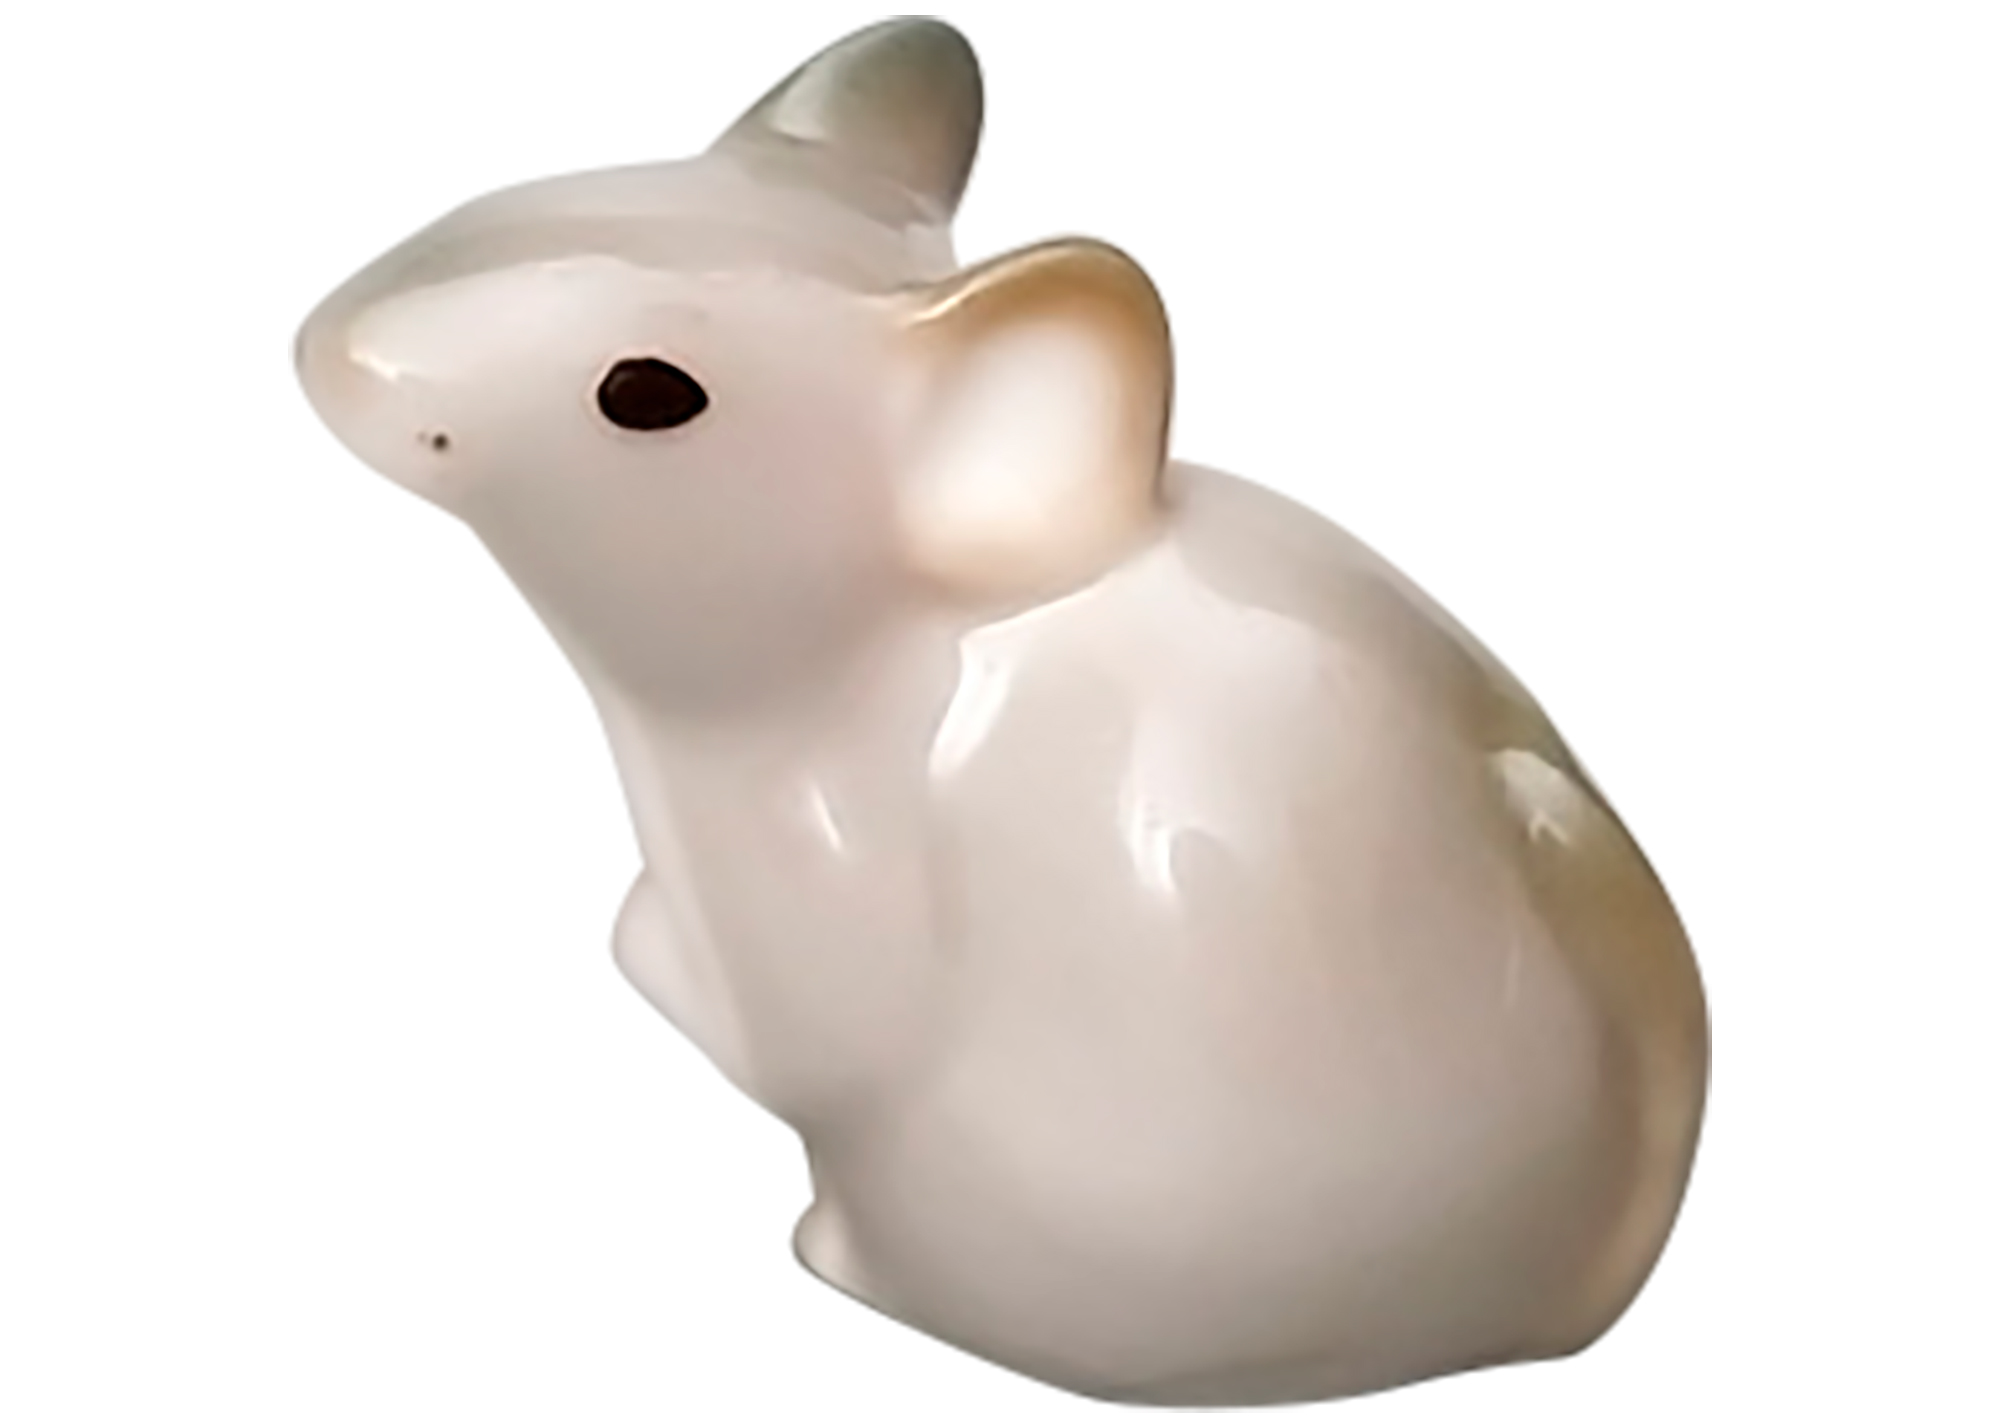 Buy Фарфоровая статуэтка "Серая мышка" (маленькая) at GoldenCockerel.com